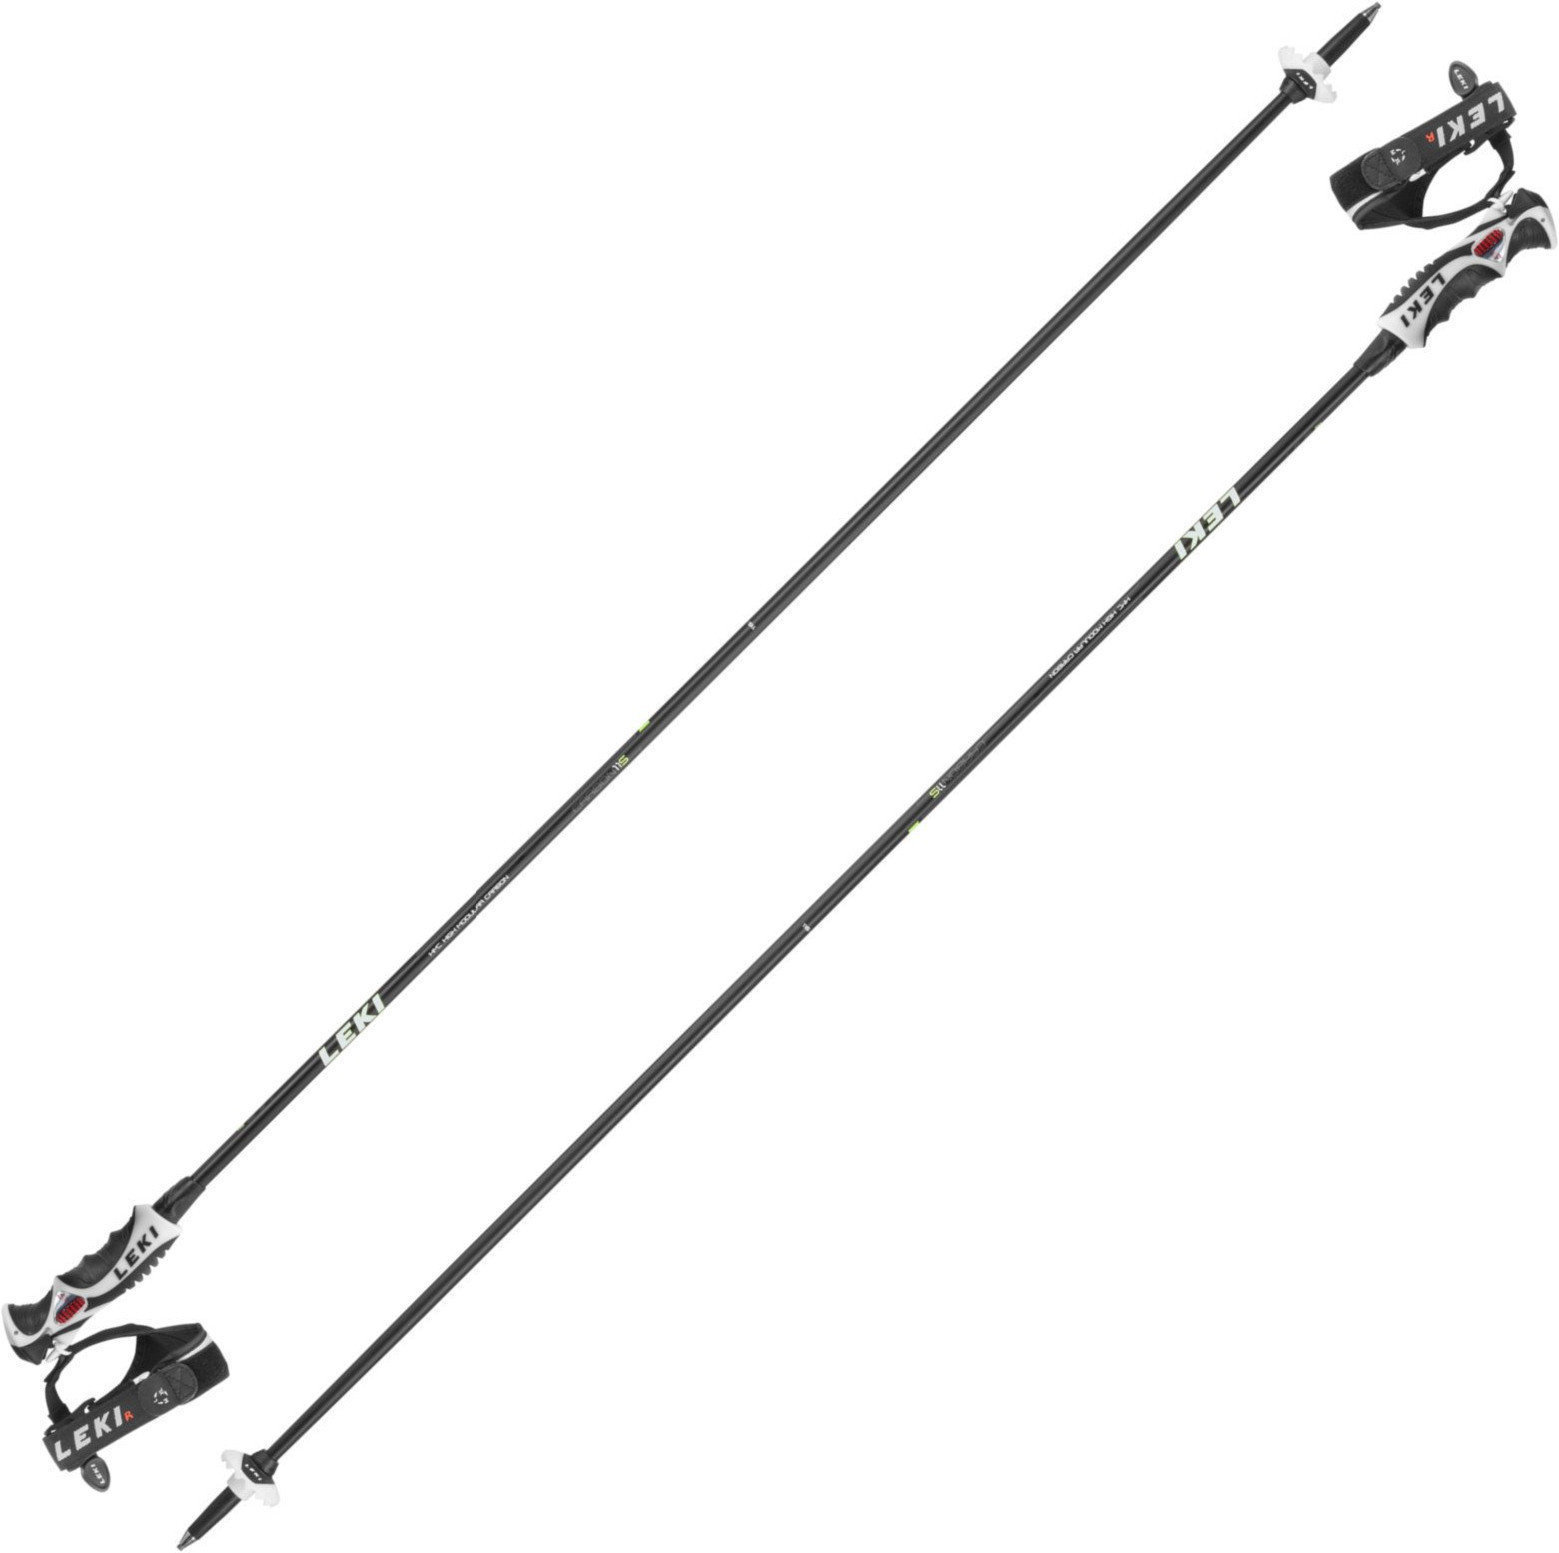 Ski Poles Leki Carbon 11 S Black/White/Yellow/Antracite 120 cm Ski Poles